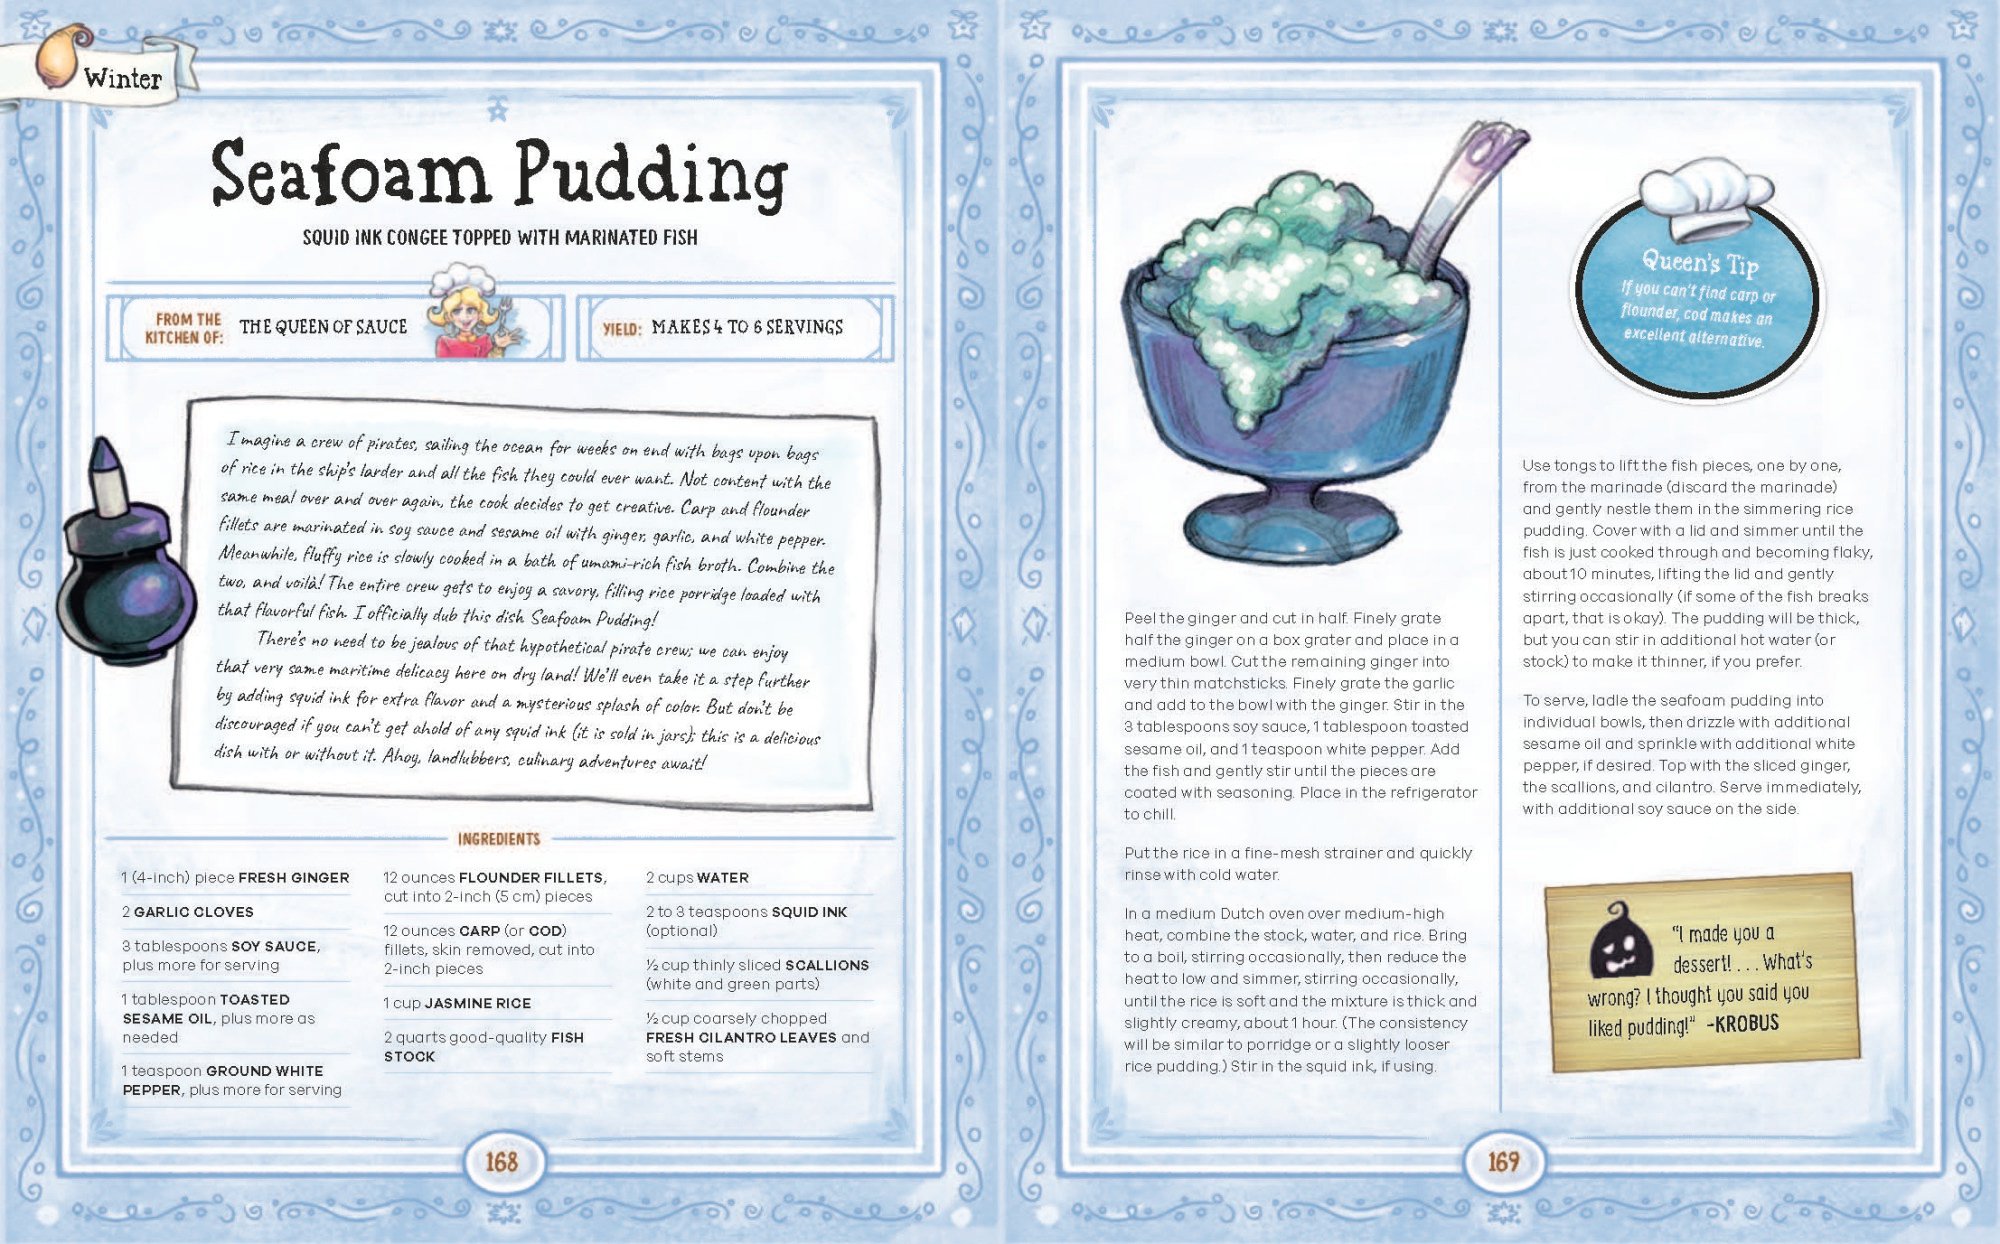 La recette du pudding à l'écume de mer dans le livre de recettes officiel de Stardew Valley.